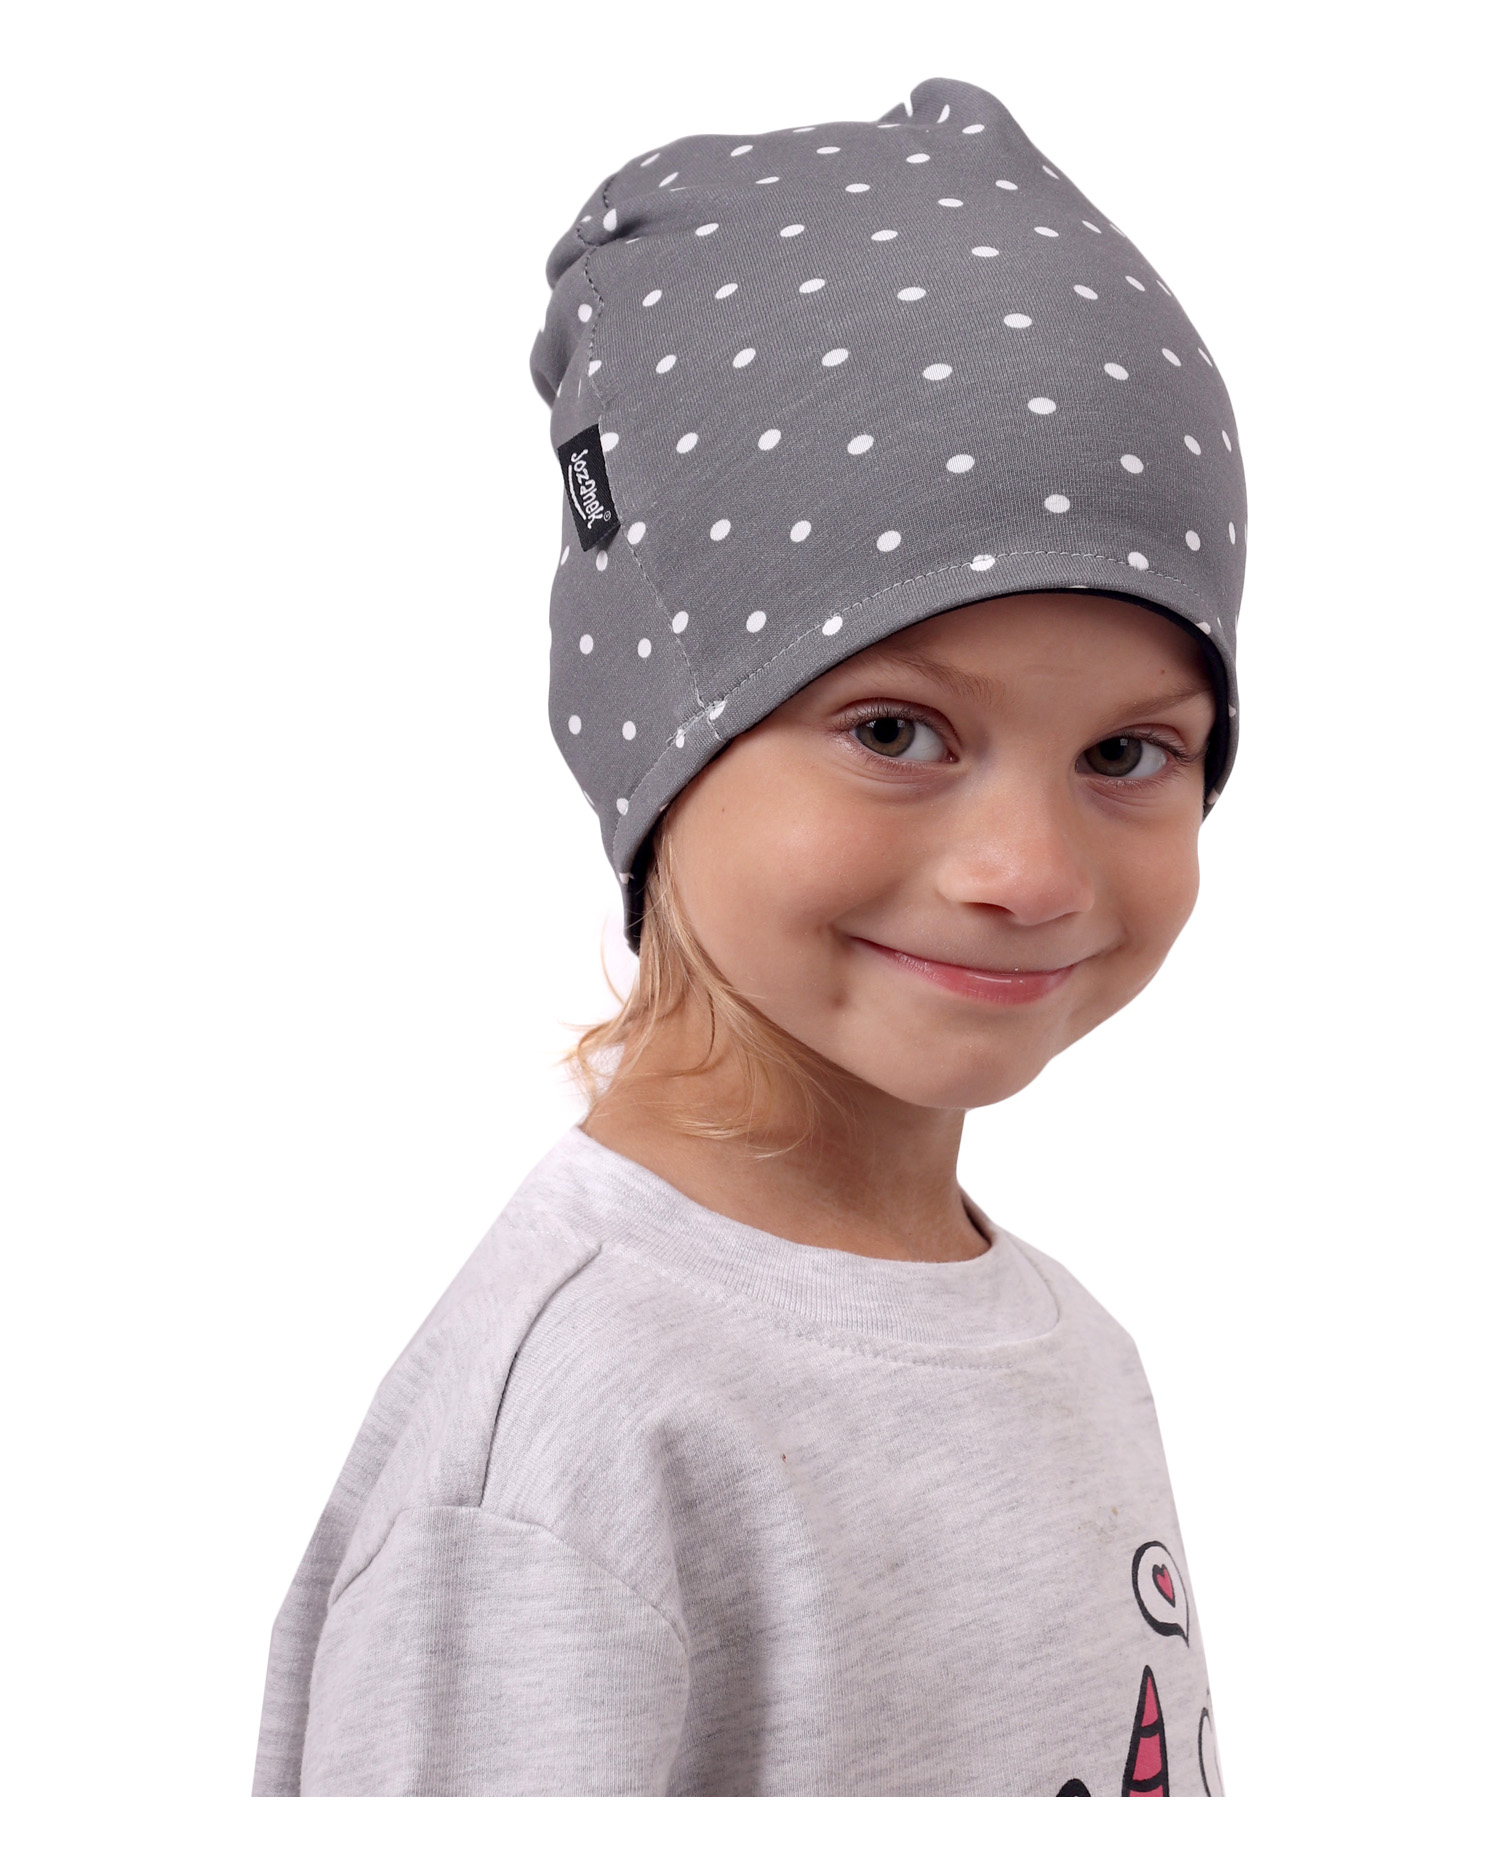 Detská čiapka bavlnená, obojstranná, čierna+šedá s bodkami